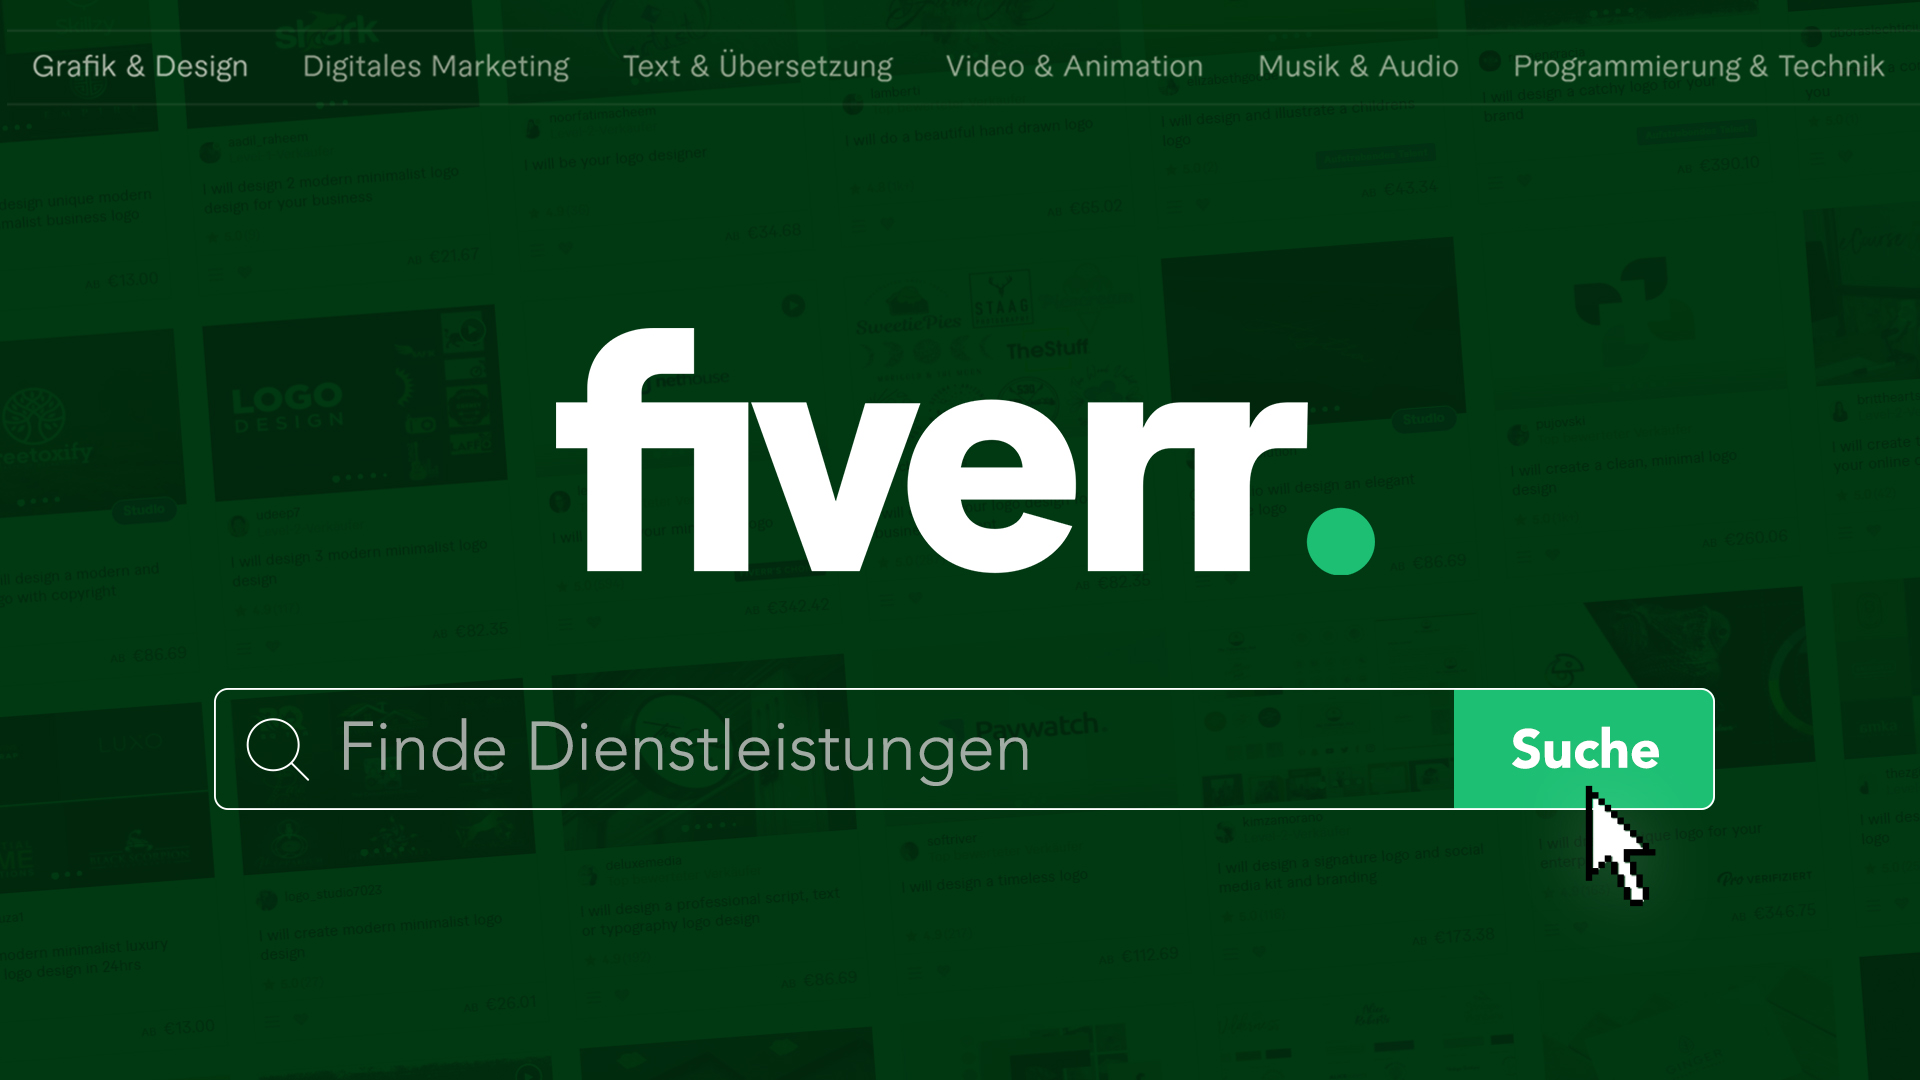 Wie funktioniert Fiverr? (Tutorial): Einfach Dienstleistungen finden & buchen